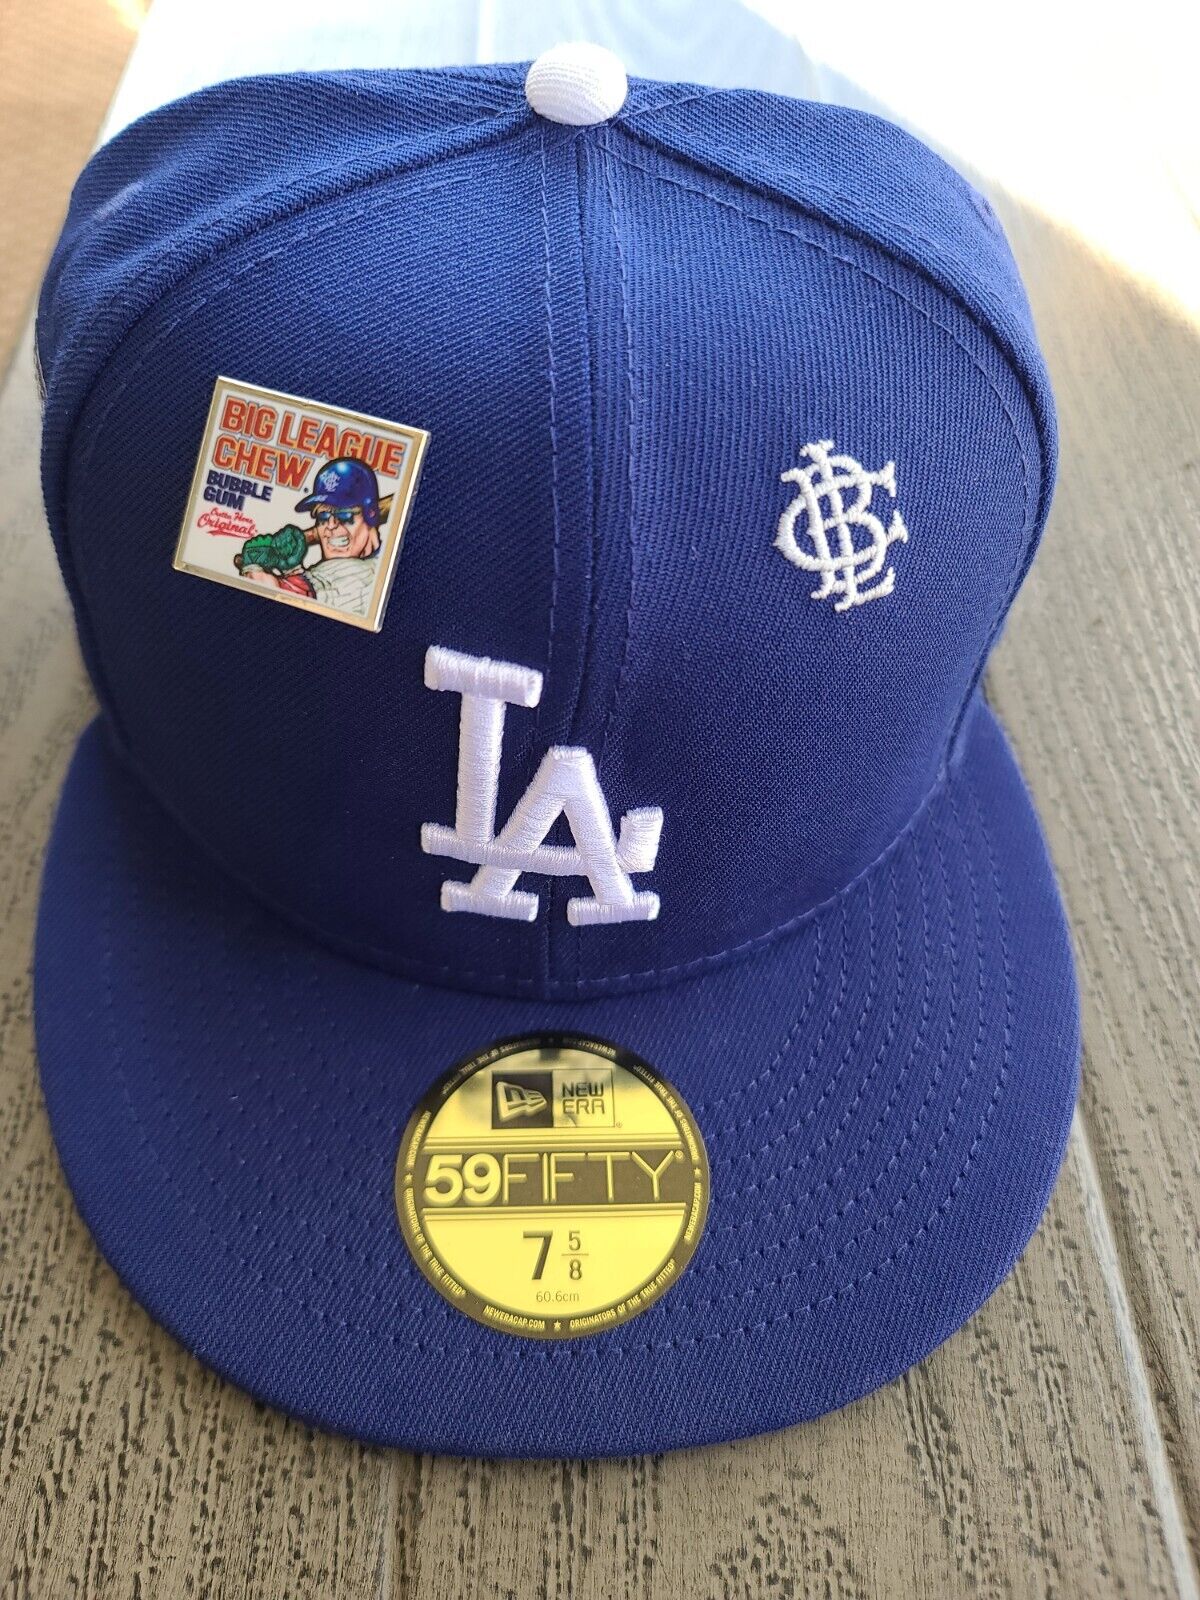 Los Angeles dodgers Big League Chew New Era 59FIFTY cap Hat blue blc patch  7 5/8